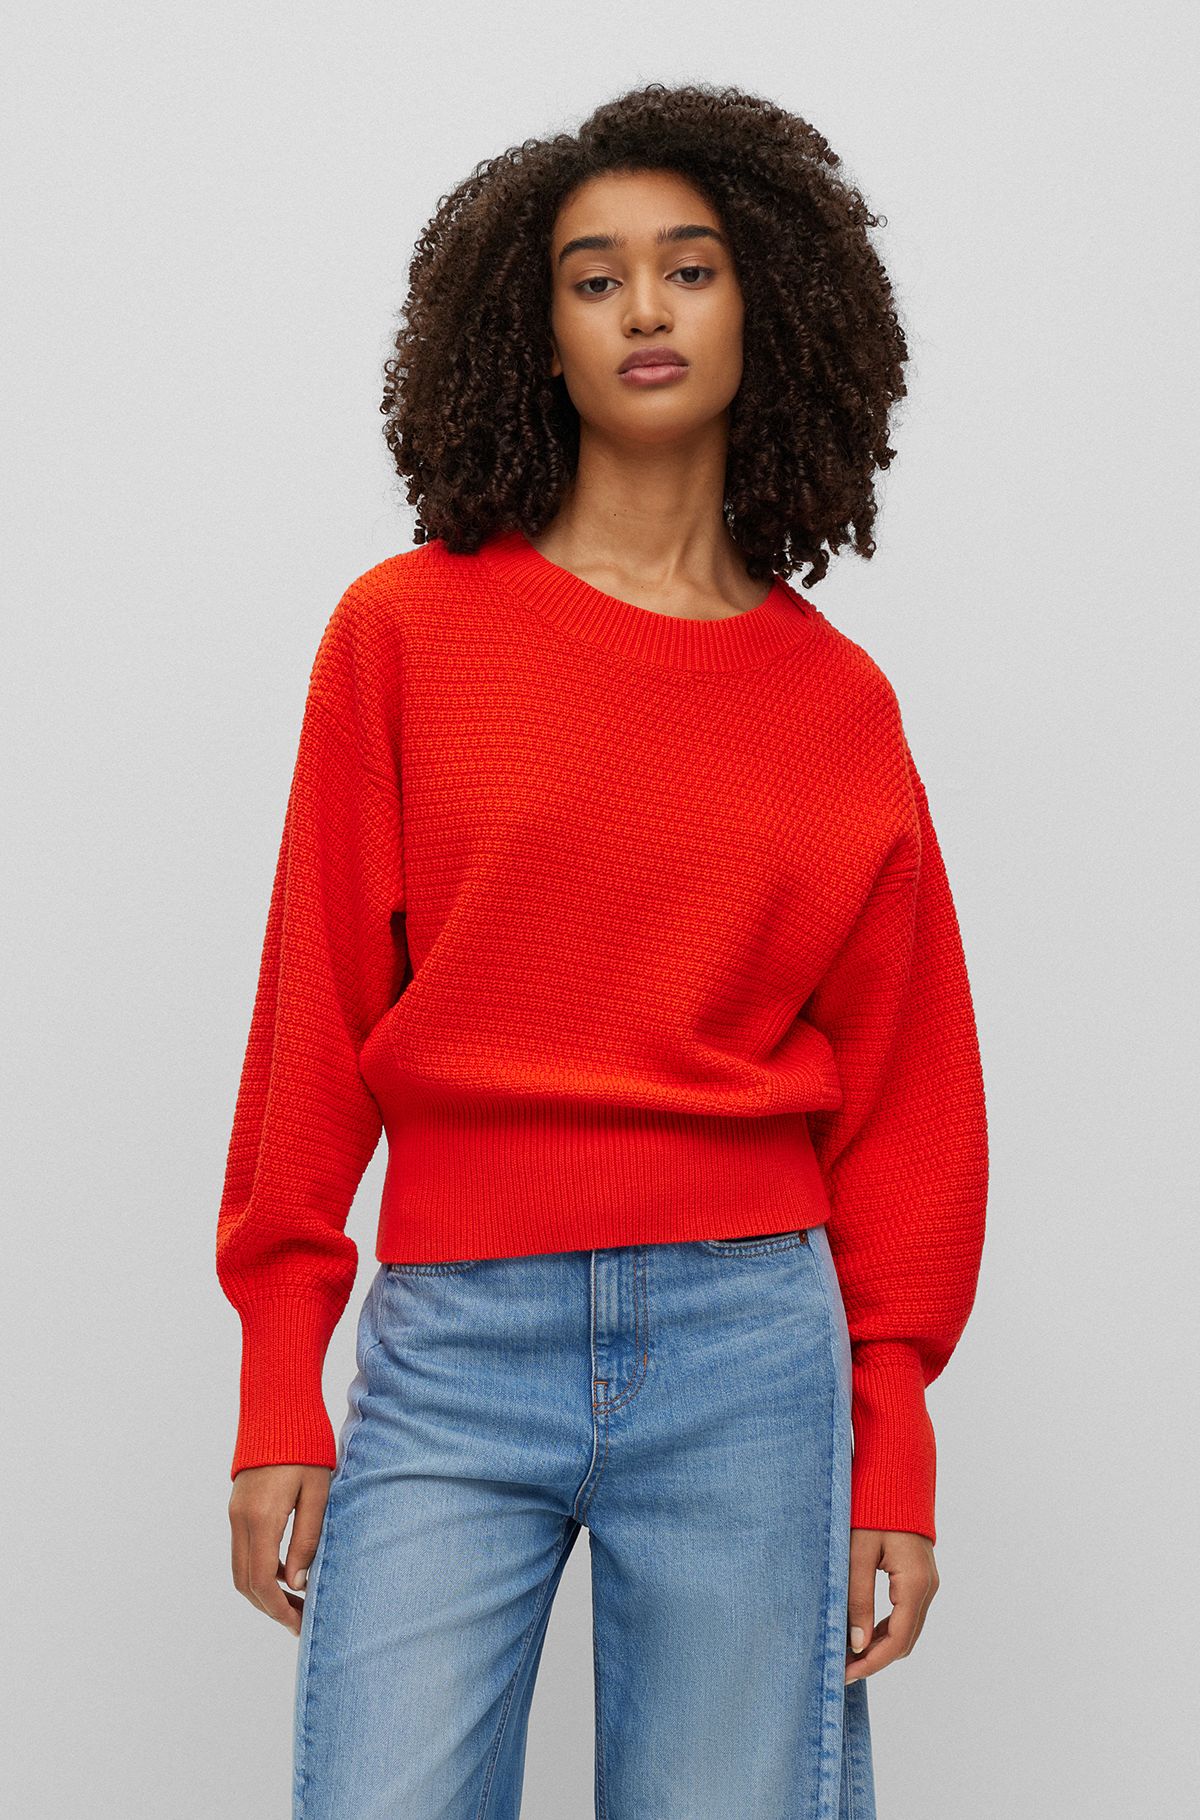 Orange Sweaters & Cardigans for by HUGO BOSS Women